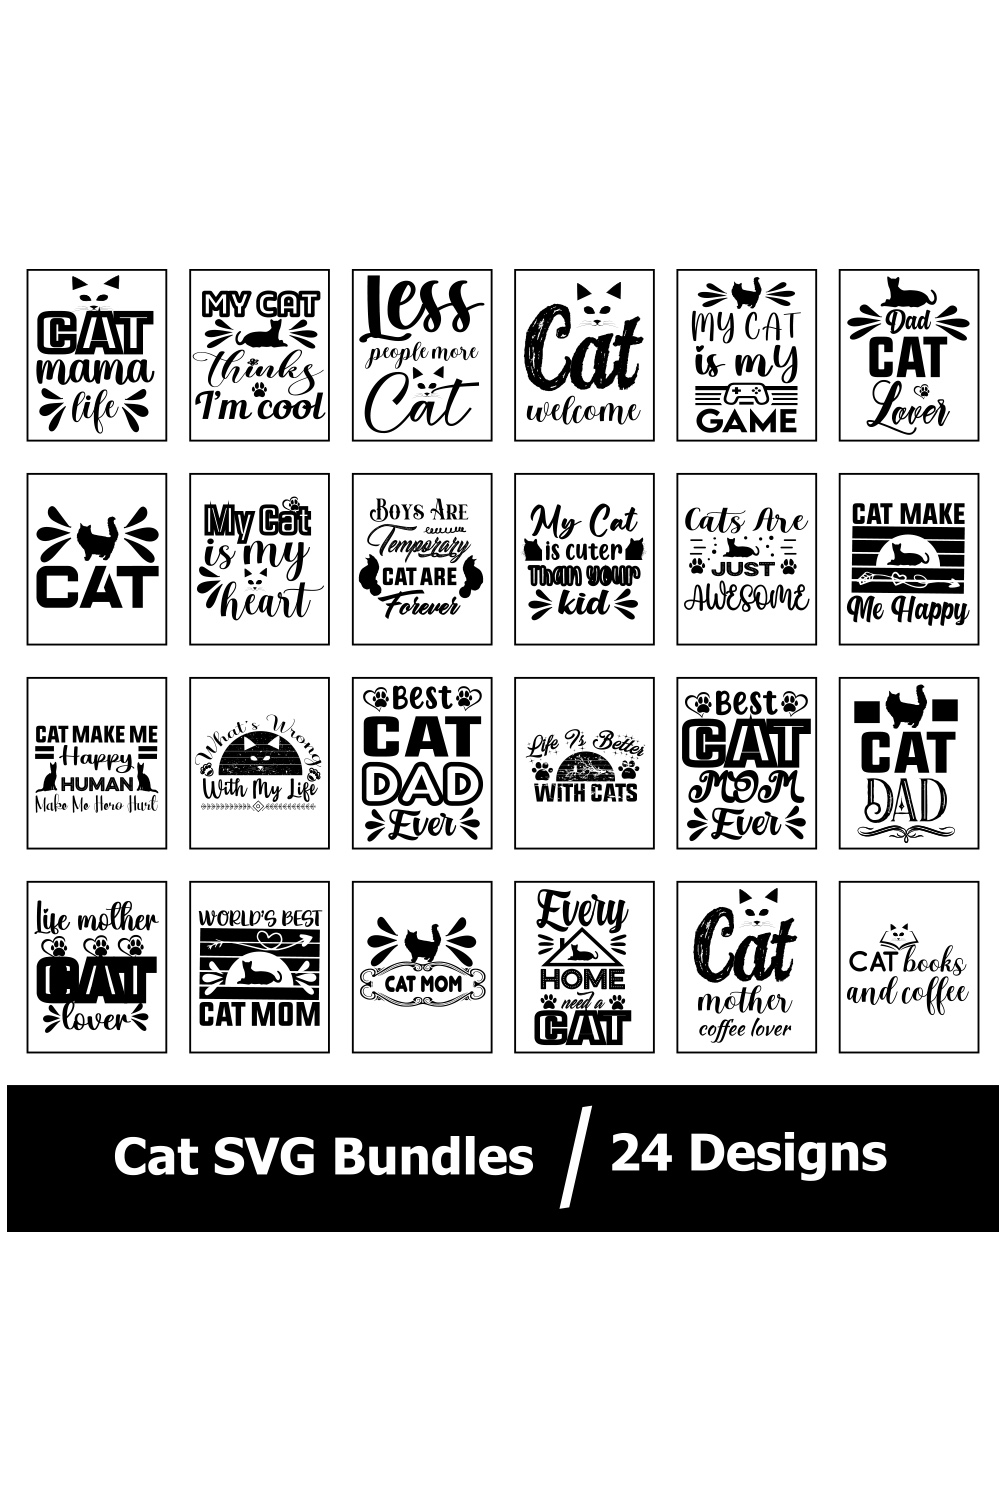 Cats SVG Bundles pinterest preview image.